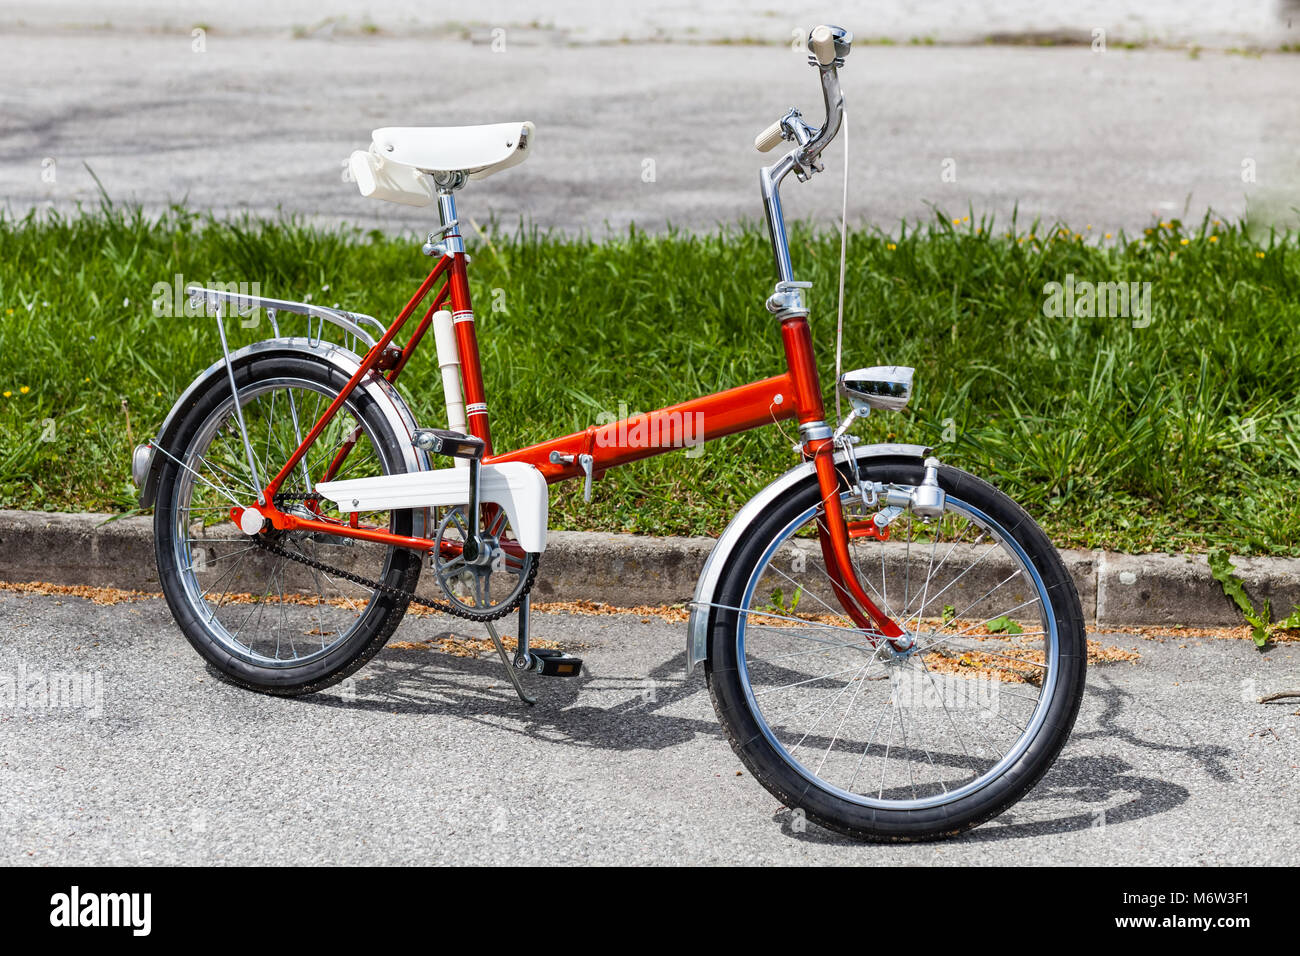 Vintage Classic 1970 s rotes Klapprad Fahrrad in einem einwandfreien Zustand Parken auf der Straße in der Nähe von Gras Stockfoto